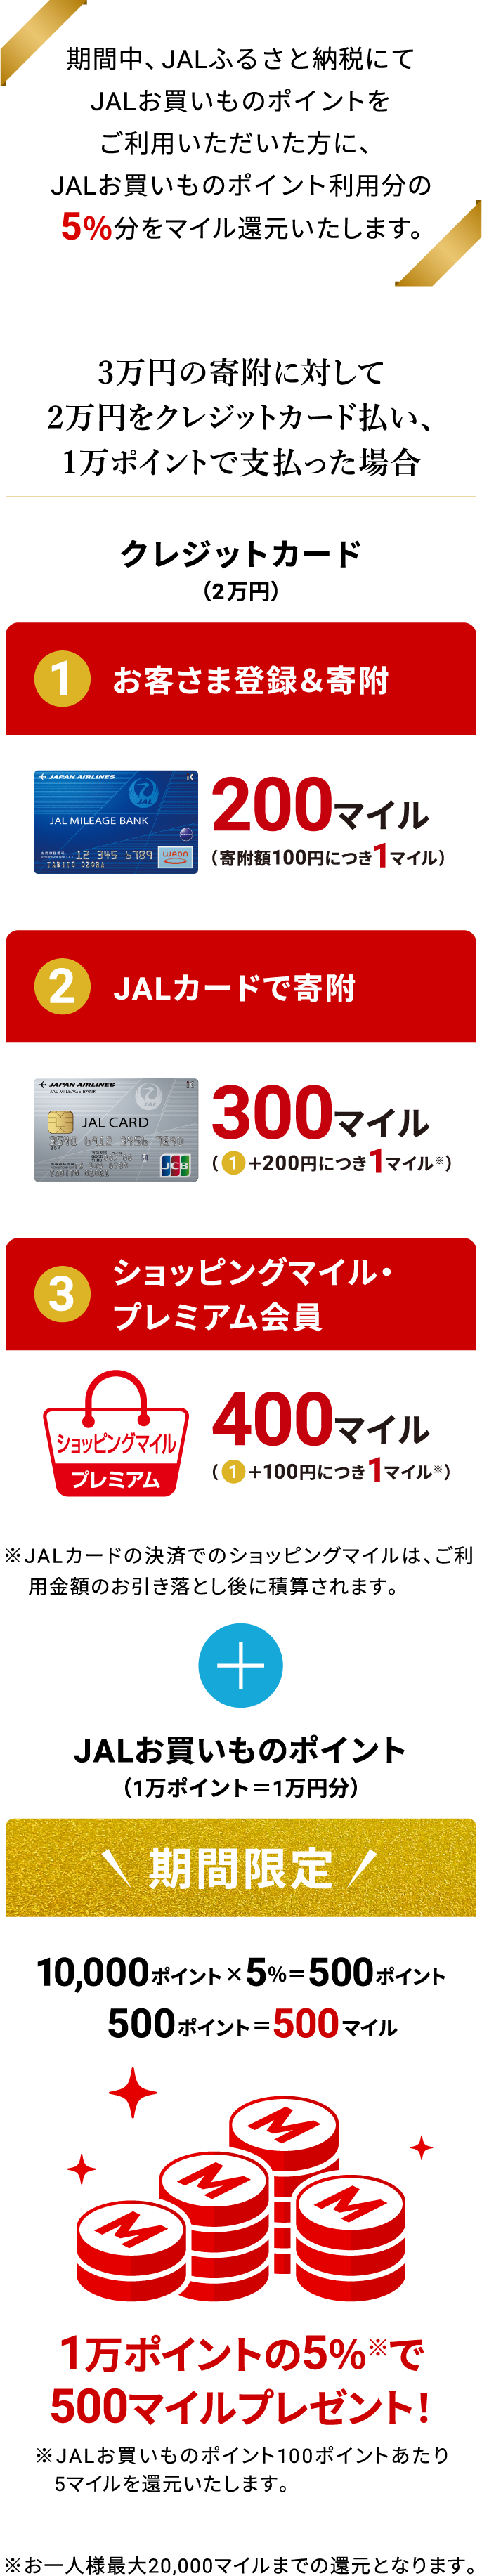 期間中、JALふるさと納税にてJALお買いものポイントをご利用いただいた方に、JALお買いものポイント利用分の5％分をマイル還元いたします。 3万円の寄附に対して2万円をクレジットカード払い、1万ポイントで支払った場合 クレジットカード（2万円） 1.お客さま登録＆寄附 2.JALカードで寄附 3.ショッピングマイル・プレミアム会員 ※JALカードの決済でのショッピングマイルは、ご利用金額のお引き落とし後に積算されます。 JALお買いものポイント（1万ポイント＝1万円分） 期間限定 10,000ポイント×5%＝500ポイント 1万ポイントの5%で500マイルプレゼント！ ※お一人様最大20,000マイルまでの還元となります。